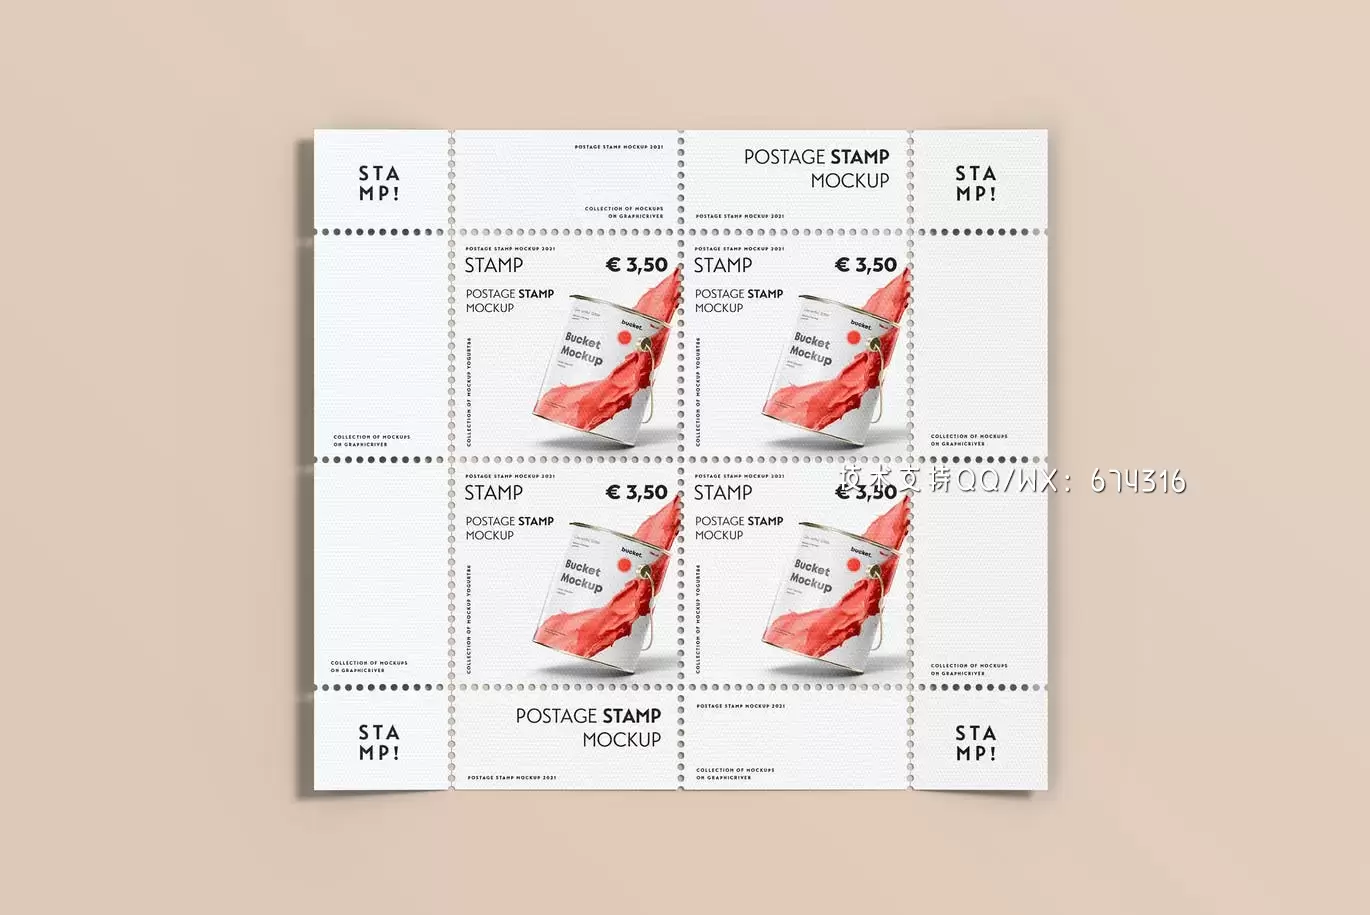 时尚高端专业的高品质邮票设计VI样机展示模型mockups免费下载插图10